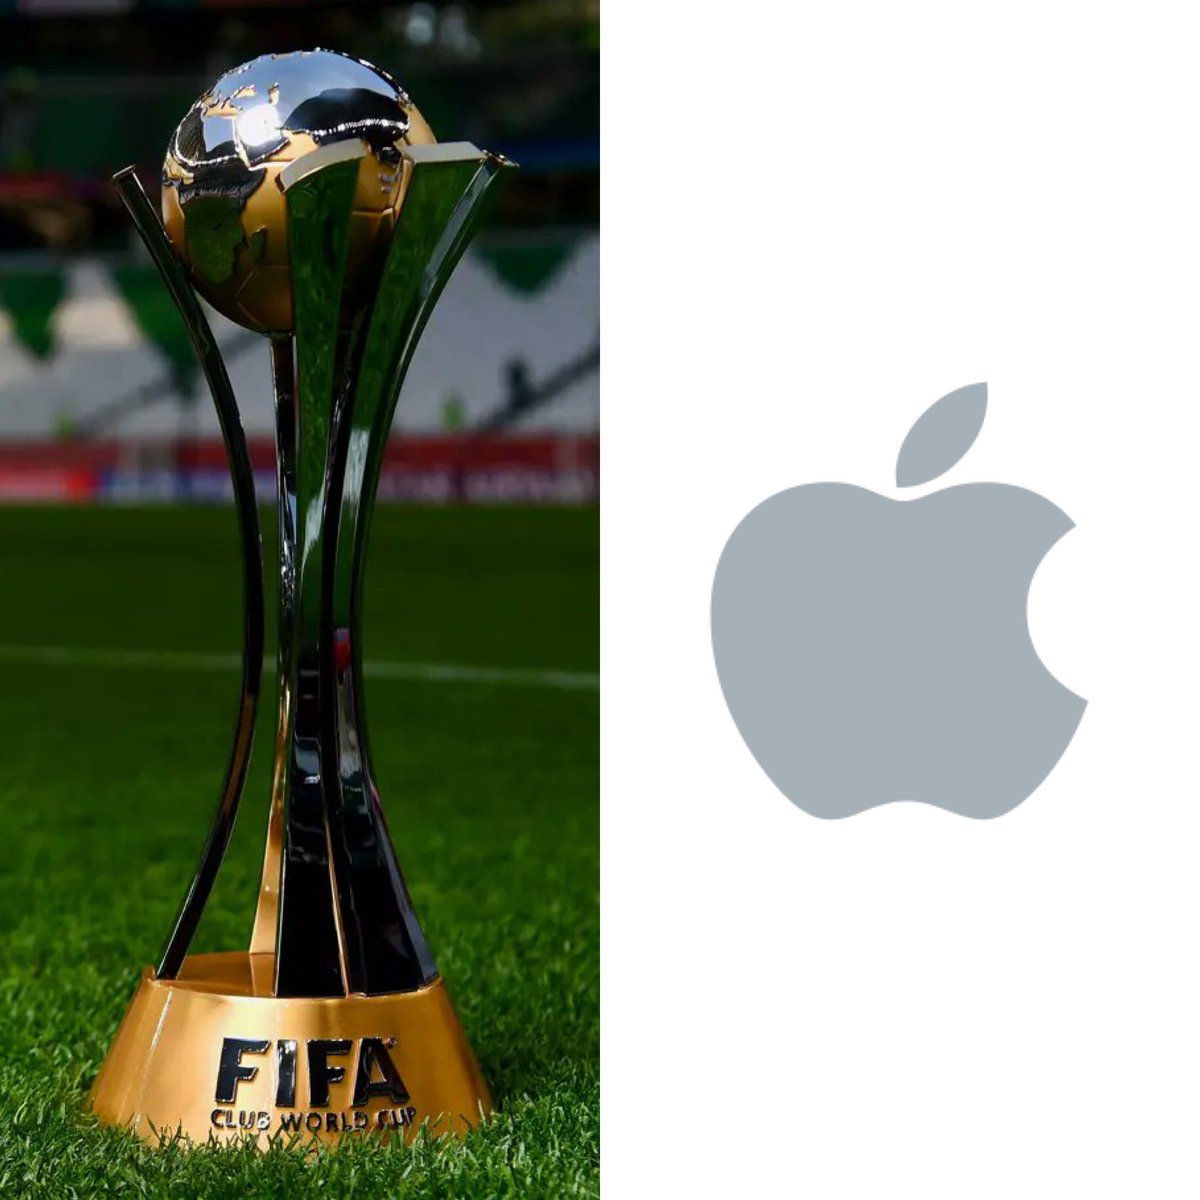 Según se informa, Apple está negociando con la FIFA para quedarse con los derechos del mundial de clubes que se celebrará en el 2025 en Estados Unidos. Recordemos que este mundial estrenará un nuevo formato donde se contarán con 32 clubes de todo el mundo.